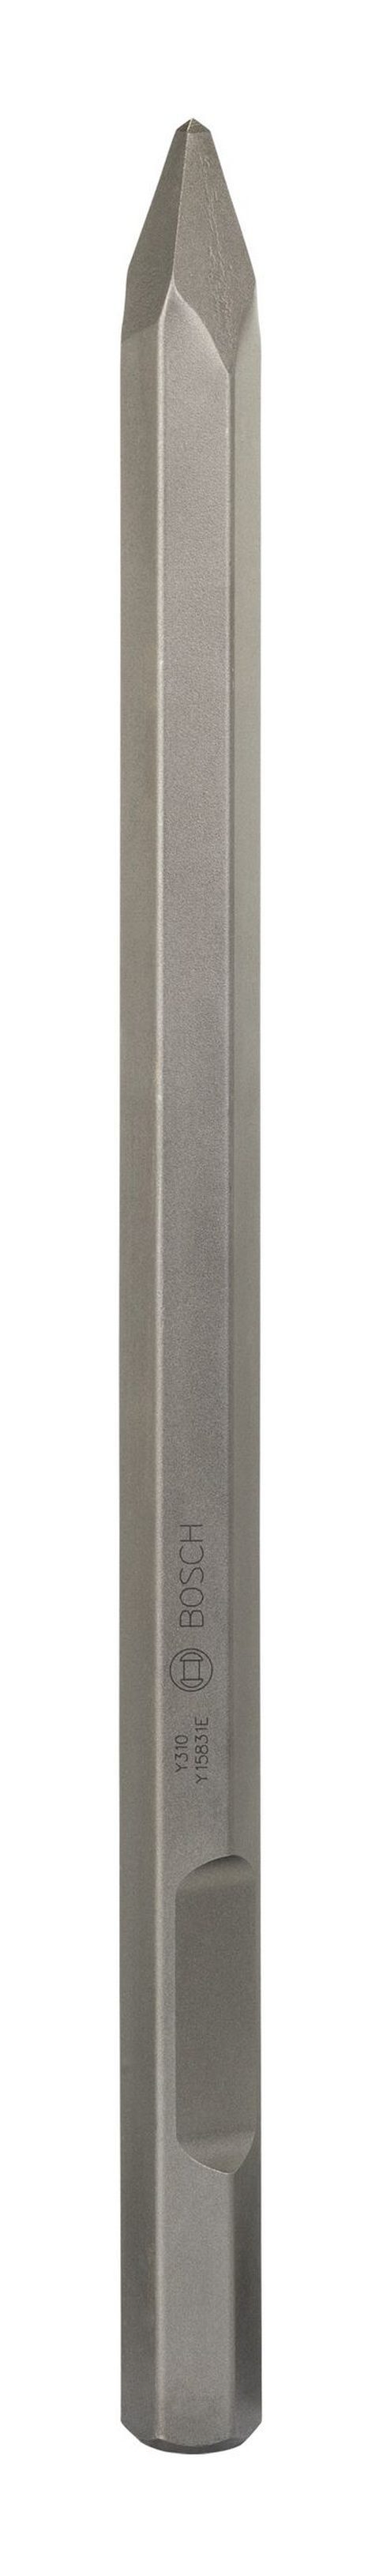 BOSCH Steinbohrer, Spitzmeißel mit 28-mm-Sechskantaufnahme - 520 mm